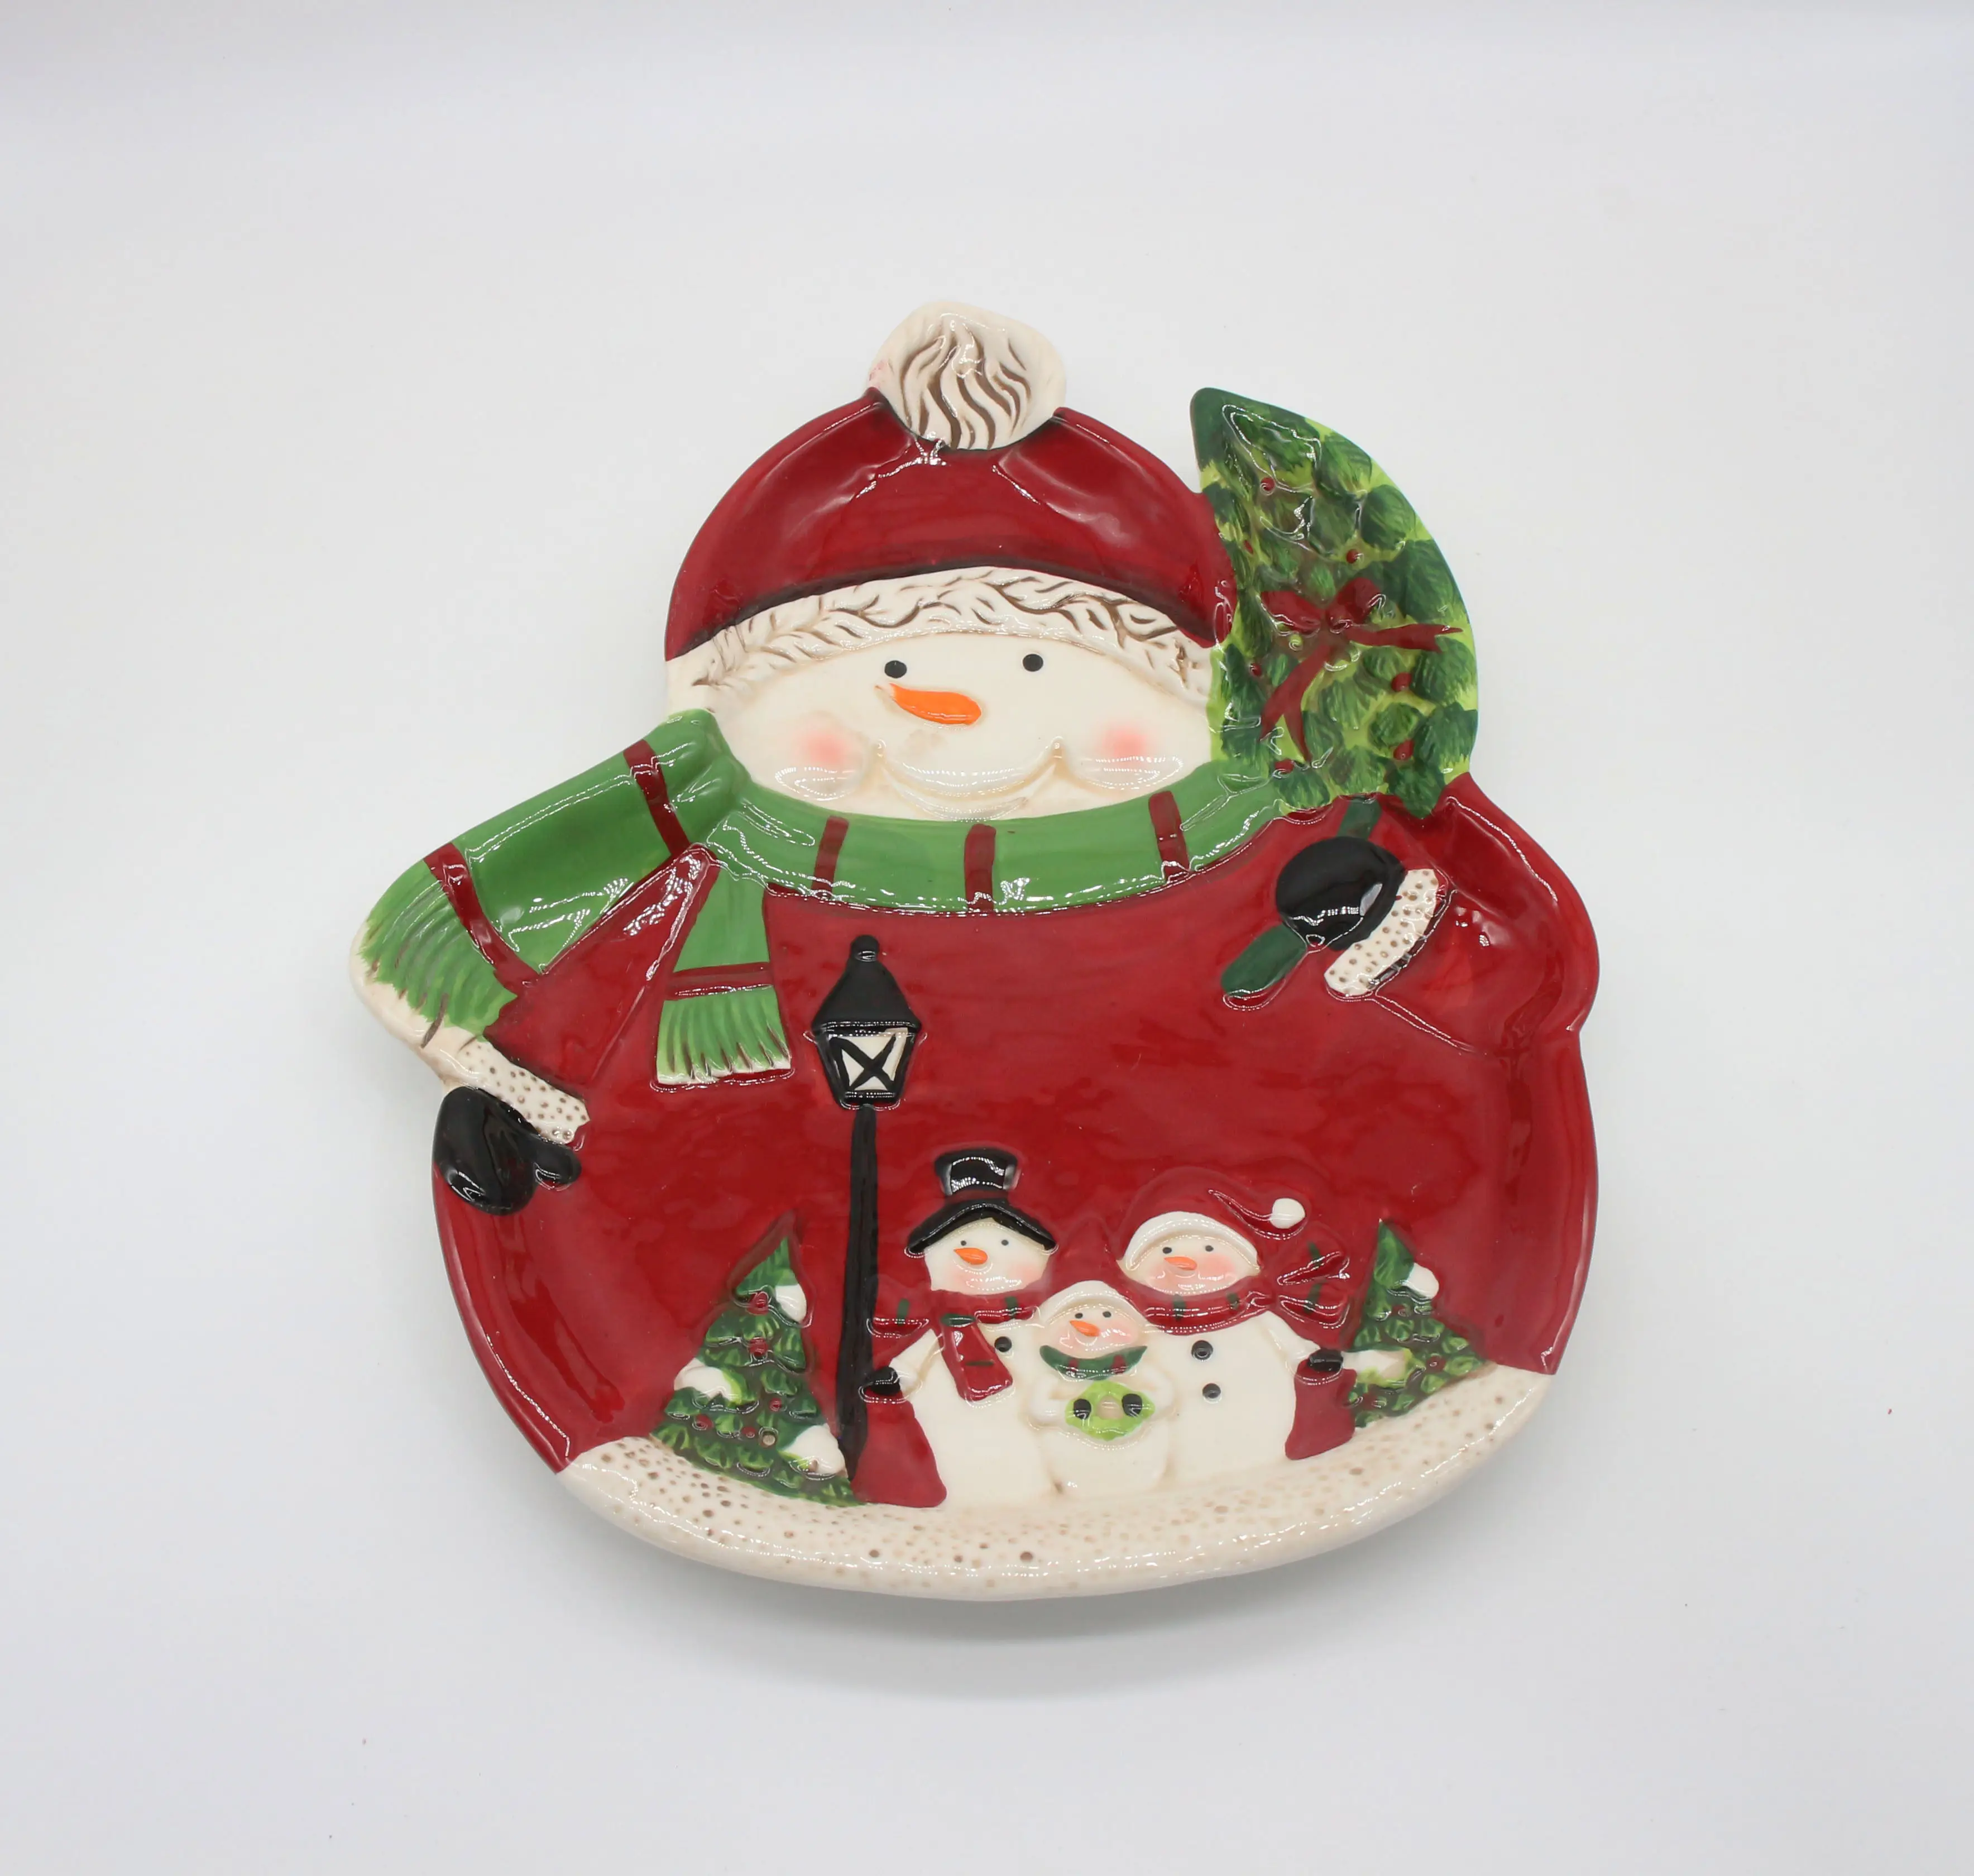 Bonhomme de neige de Noël peint à la main avec puce d'arbre de Noël et plaque d'immersion, cadeau de dolomite et artisanat